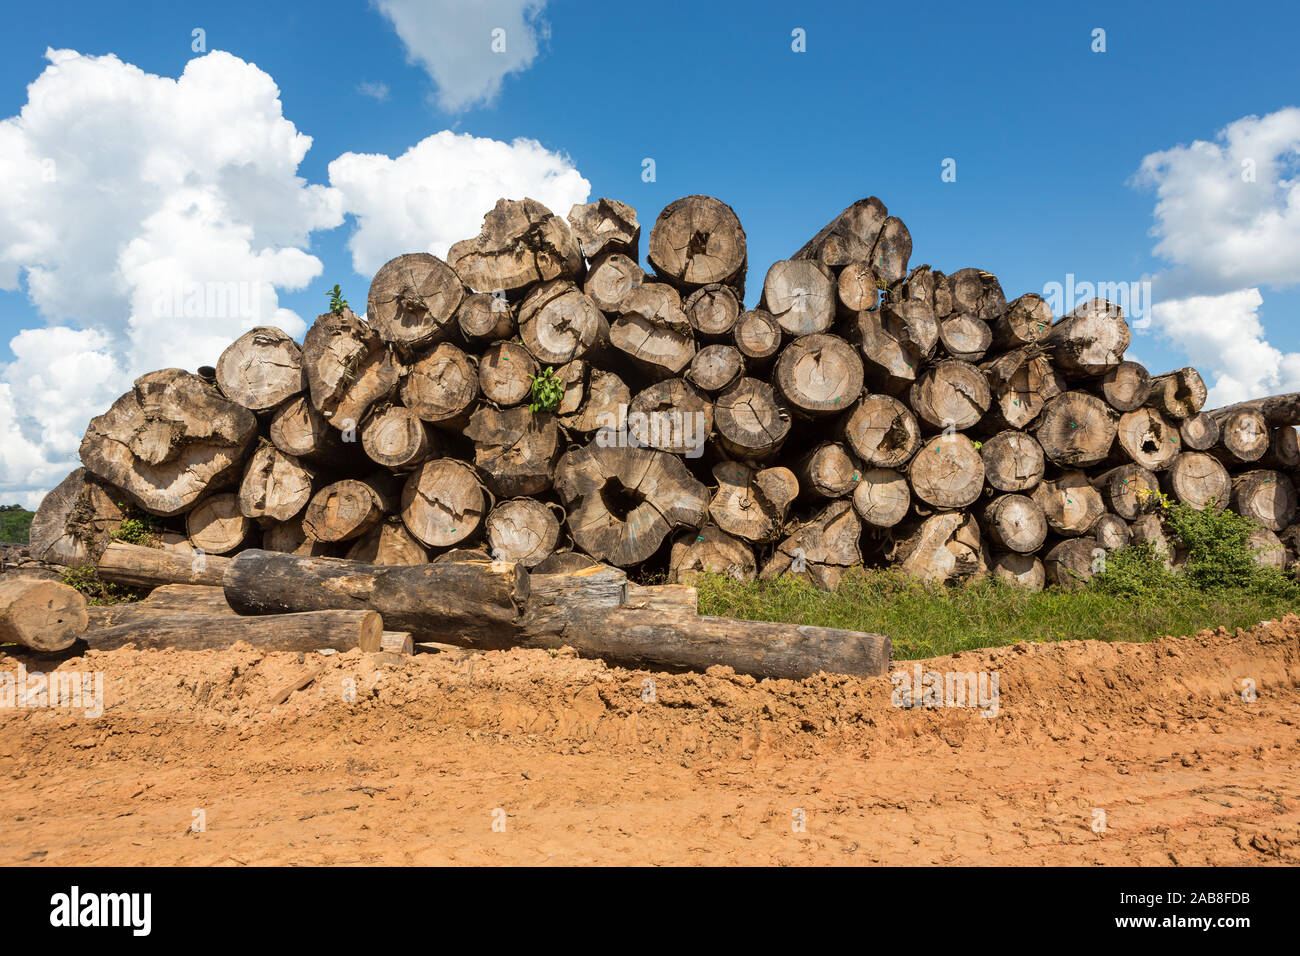 Illegale Abholzung von Regenwald des Amazonas, viele Baumstämme ausschneiden, Hartholz mit blauem Himmel. Konzept der Umwelt, globale Erwärmung, clim Stockfoto